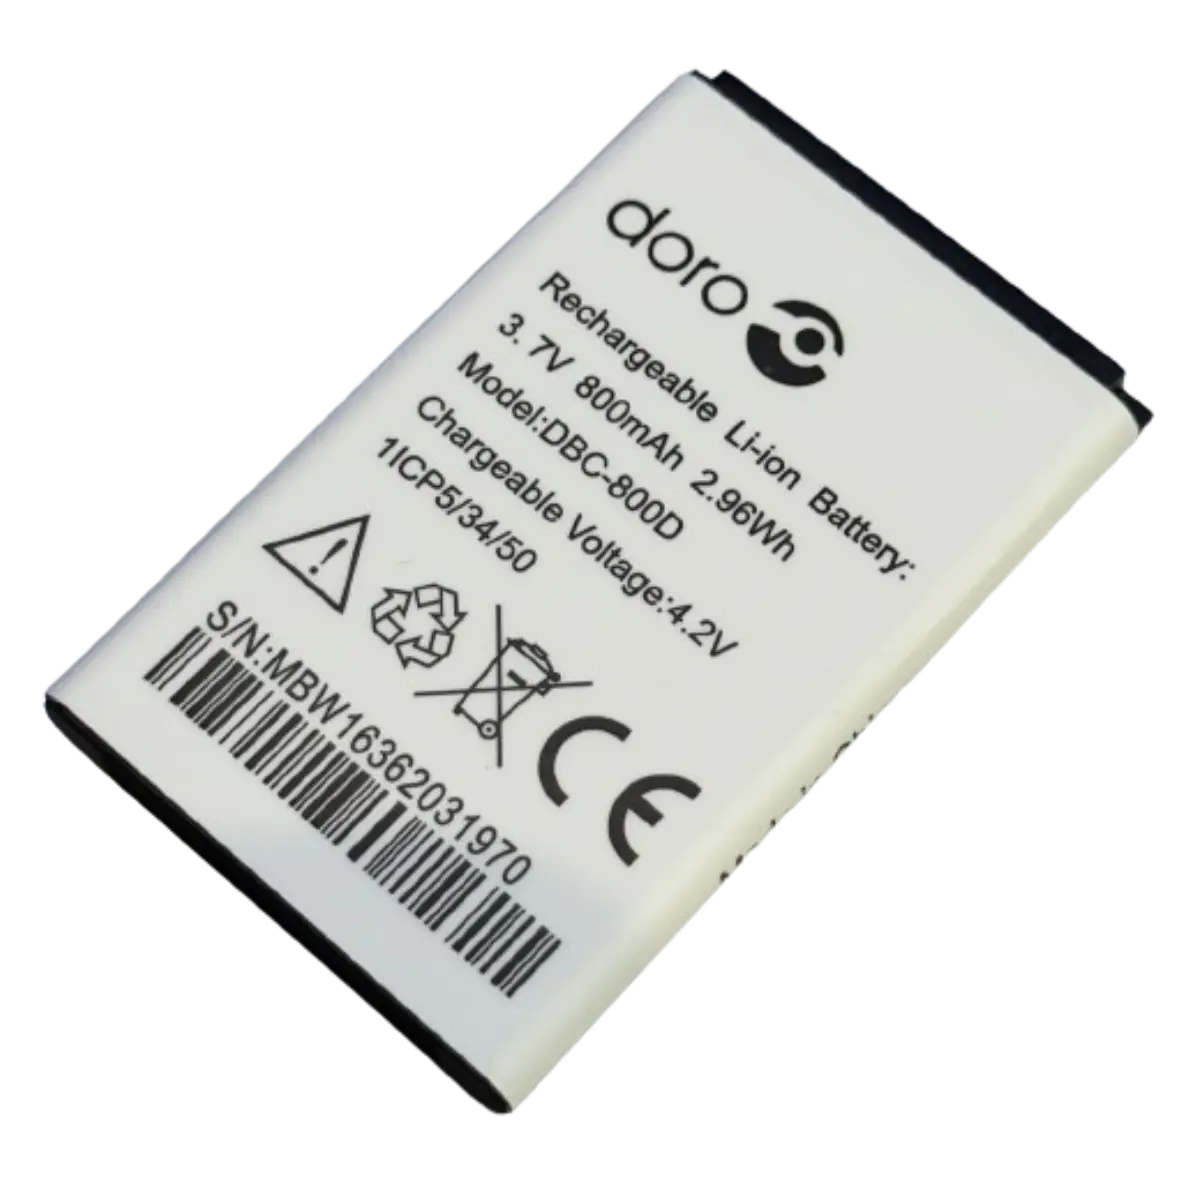 Batterie DBC-800D pour téléphone Doro d'origine